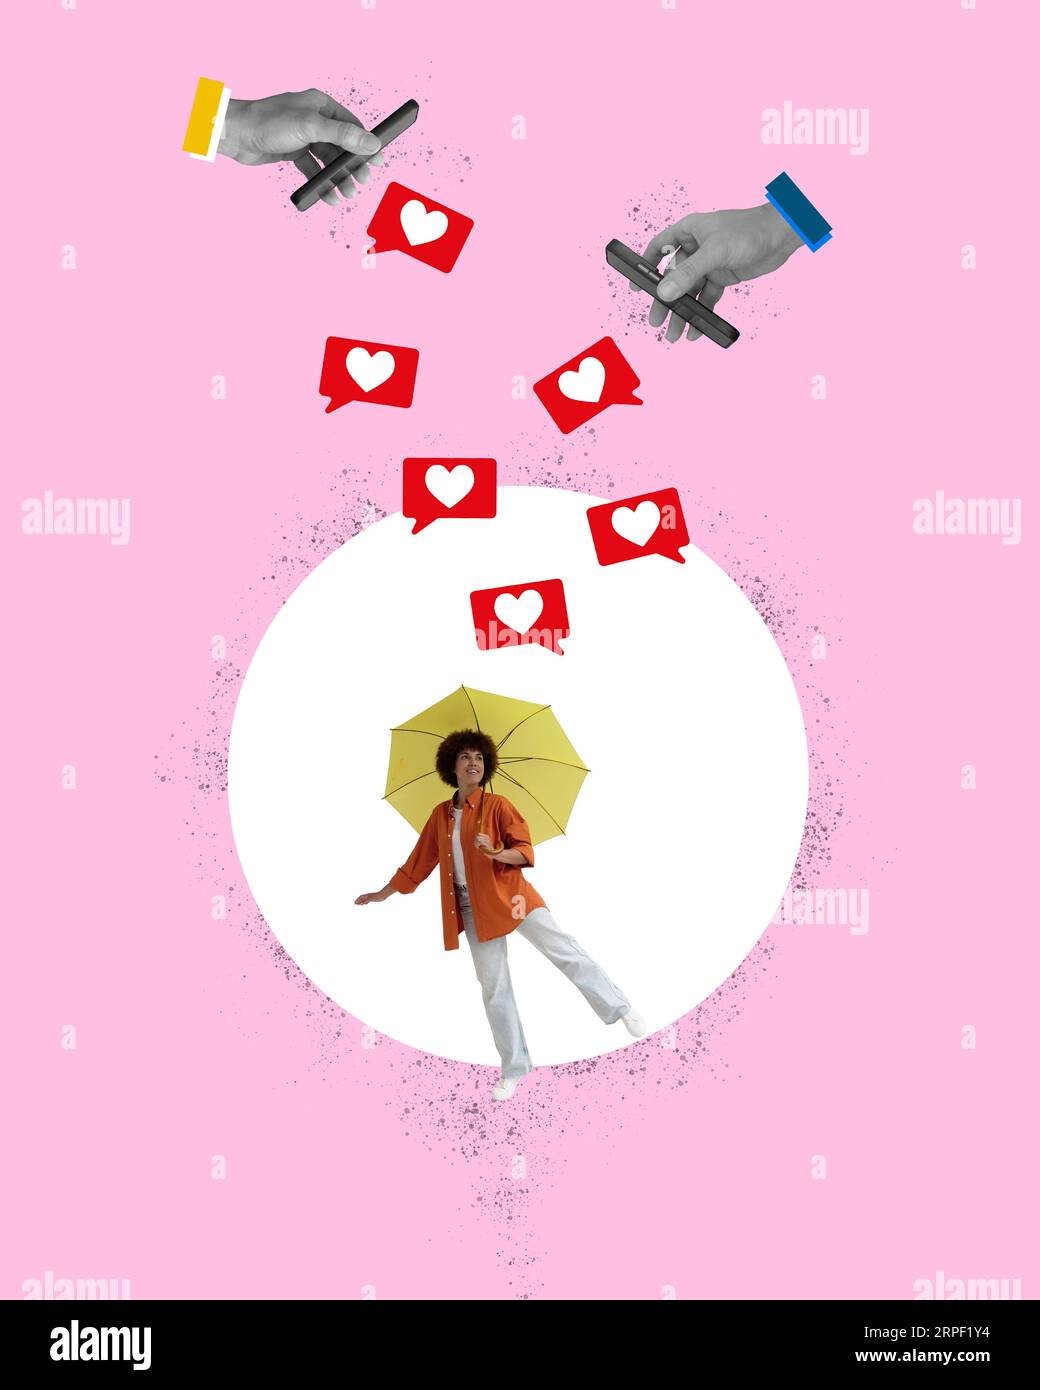 Un collage de fille avec un parapluie et aime comme un symbole de contenu populaire dans un média social. Banque D'Images